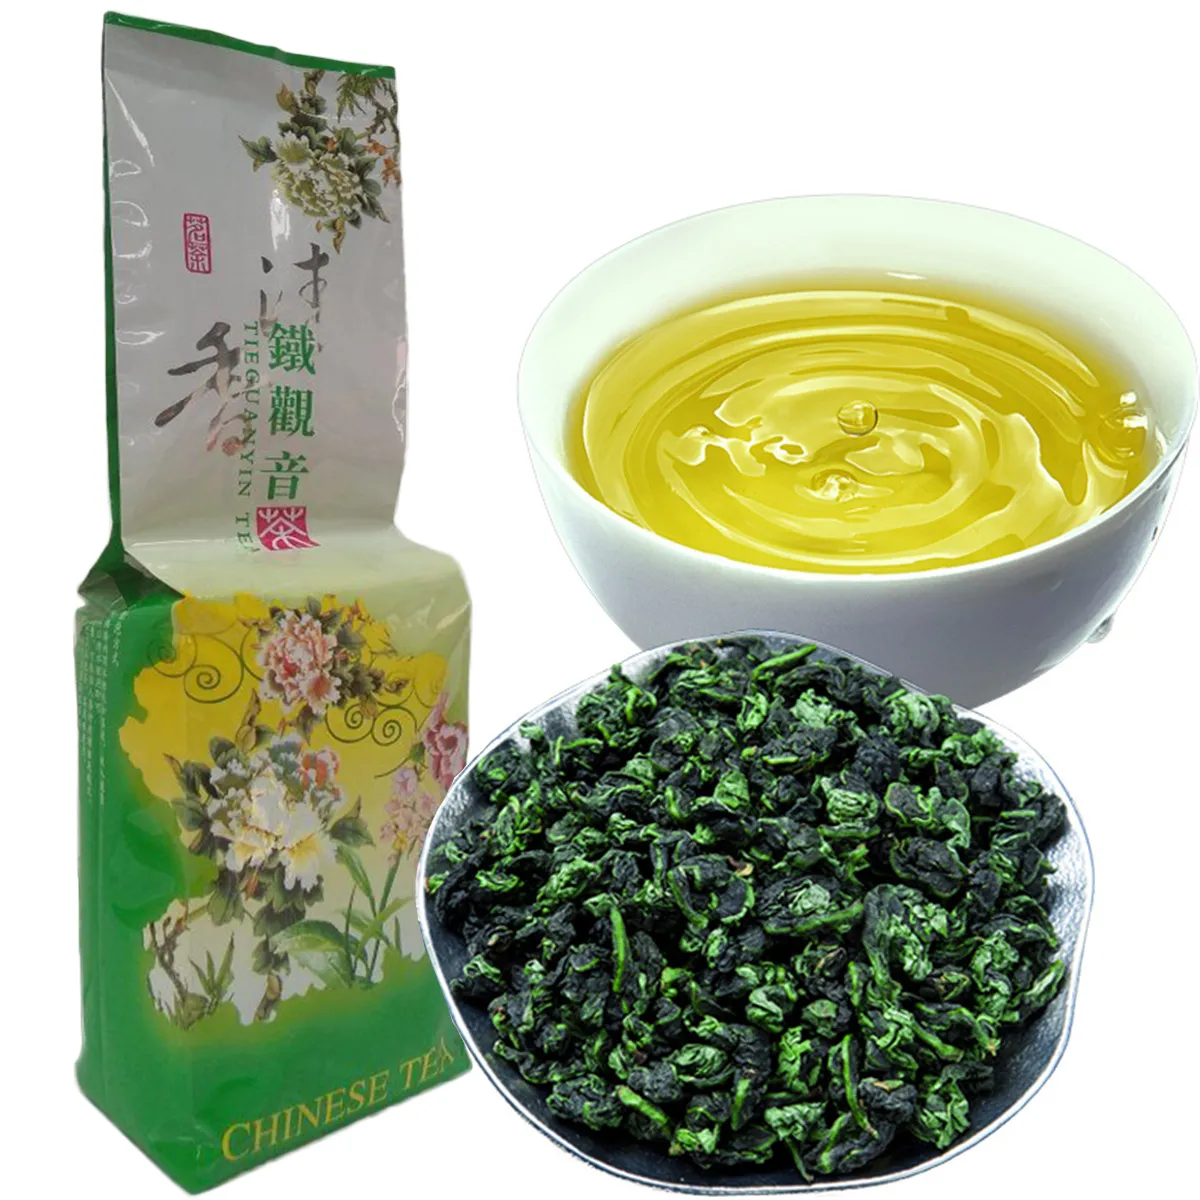 250g Promozione Confezione sottovuoto Tè profumato premium Tipo Latte cinese tradizionale Oolong cha TiKuanYin Tè verde Assistenza sanitaria TieGuanYin Tae